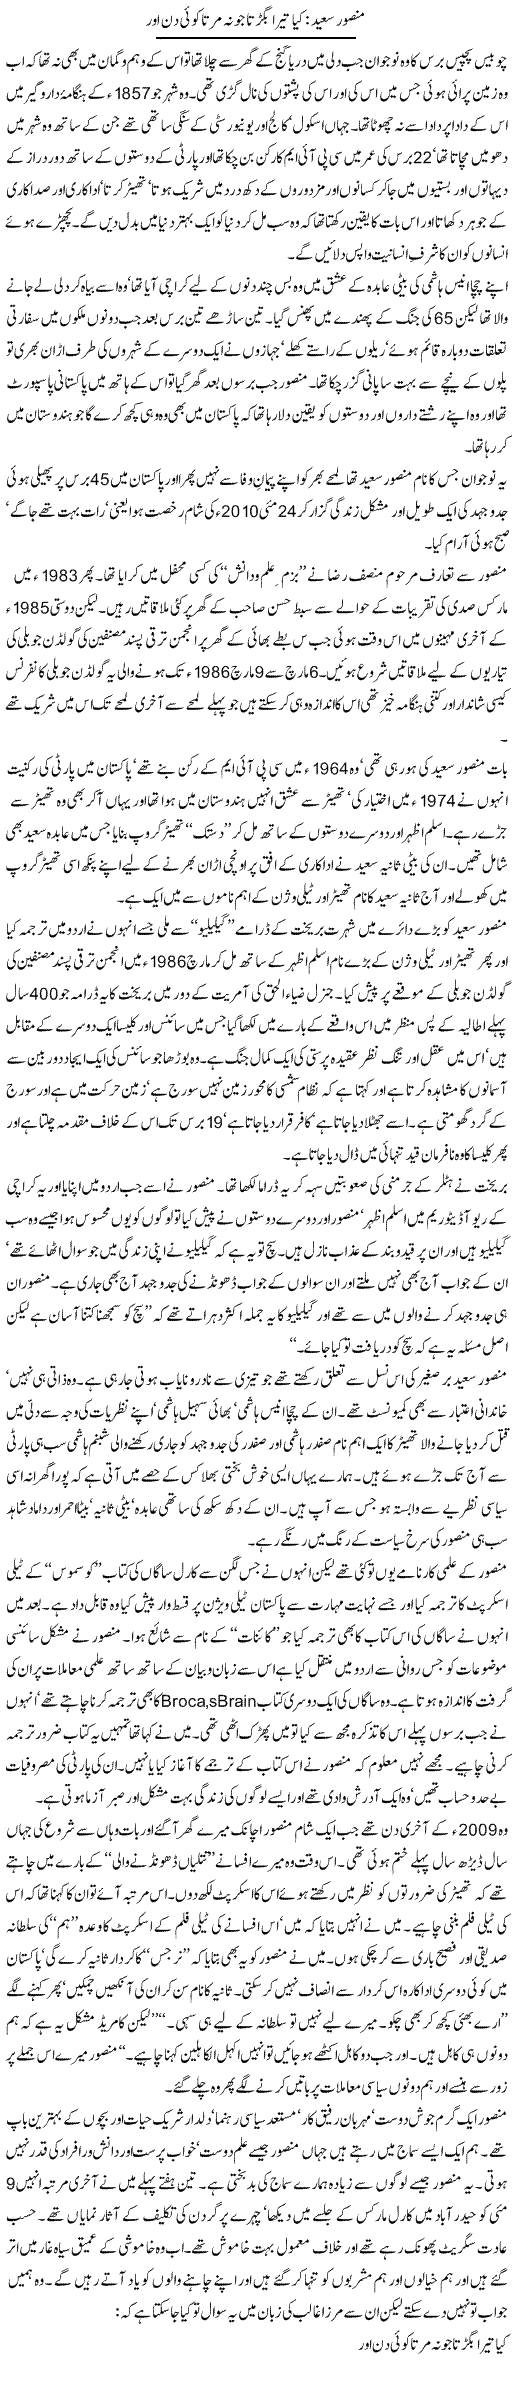 Mansoor Syed Express Column Zahid Hina 30 May 2010